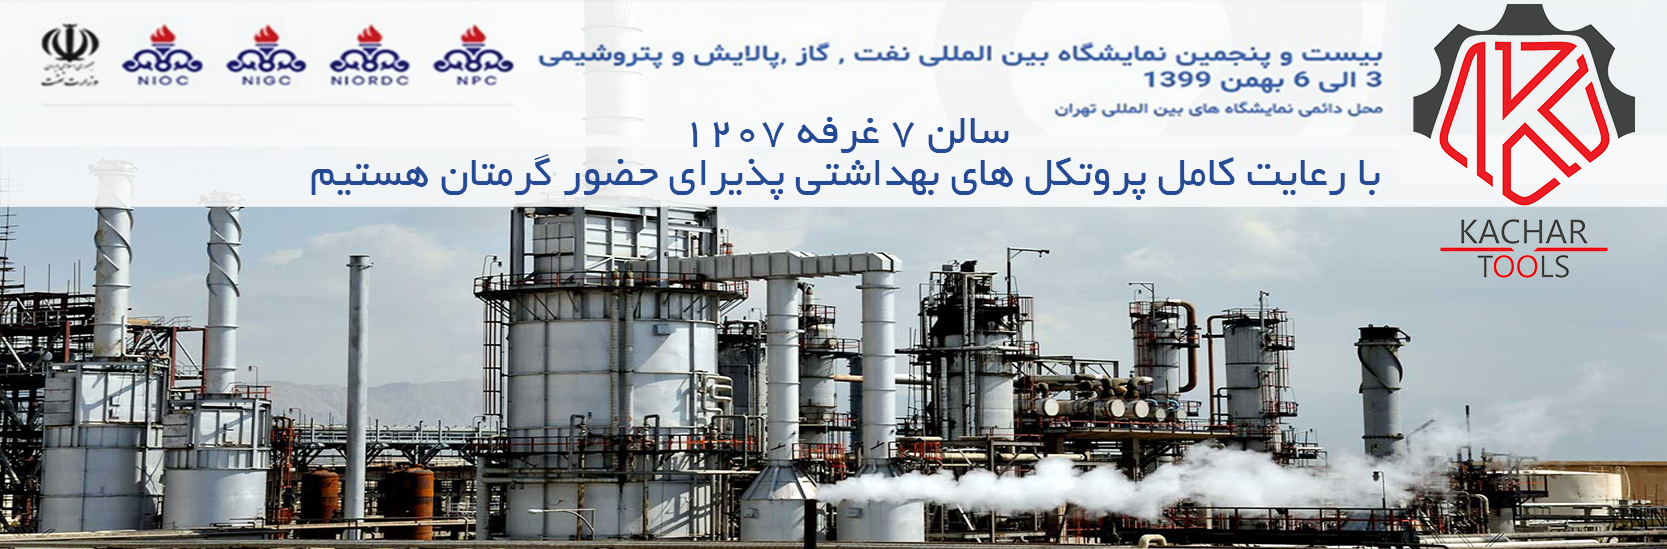 بیست و پنجمین نمایشگاه بین المللی نفت، گاز، پالایش و پتروشیمی ایران